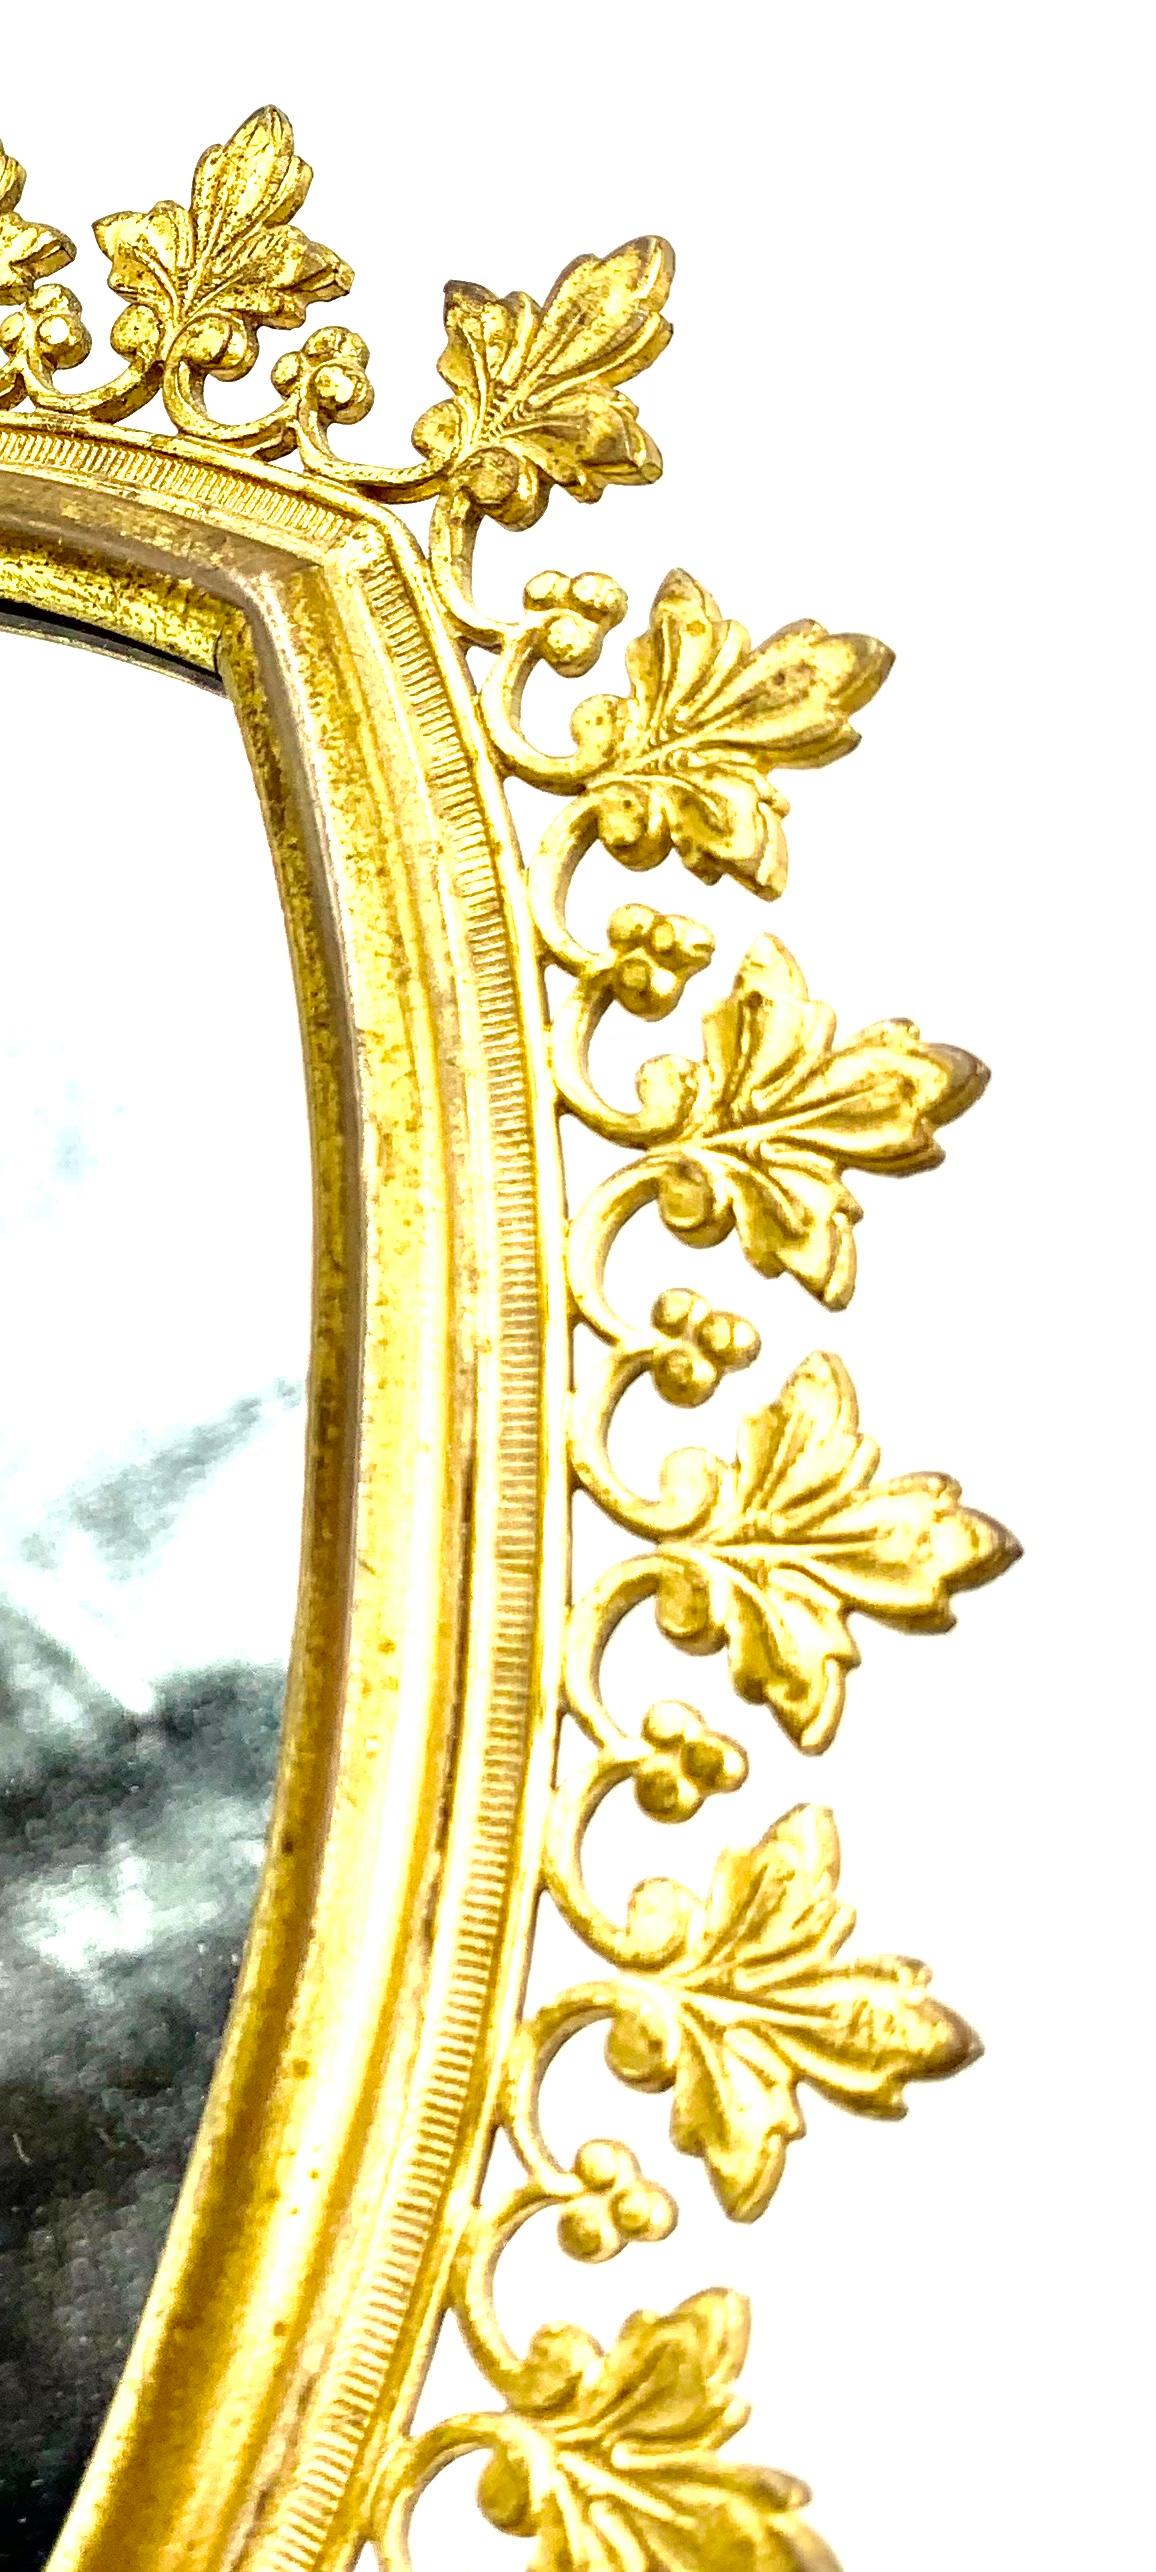 Elegant et élégant, miroir de courtoisie en bronze doré de style gothique. 
France, 19ème siècle
Belle patine or antique, détails raffinés, motif inhabituel de feuillage trèfle et de baies. Une forme d'arc en flèche bien proportionnée et richement